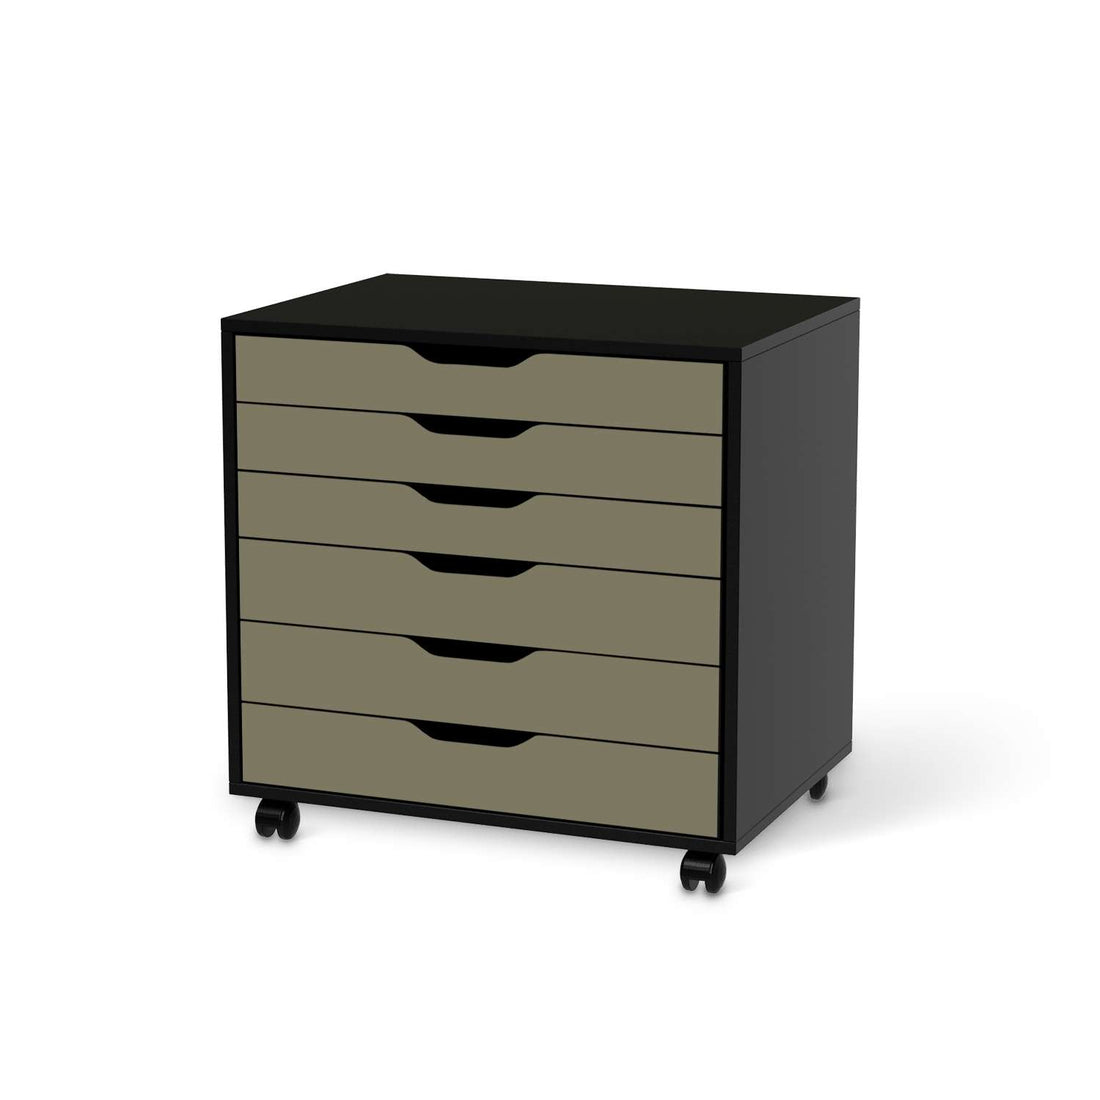 Möbelfolie Braungrau Light - IKEA Alex Rollcontainer 6 Schubladen - schwarz